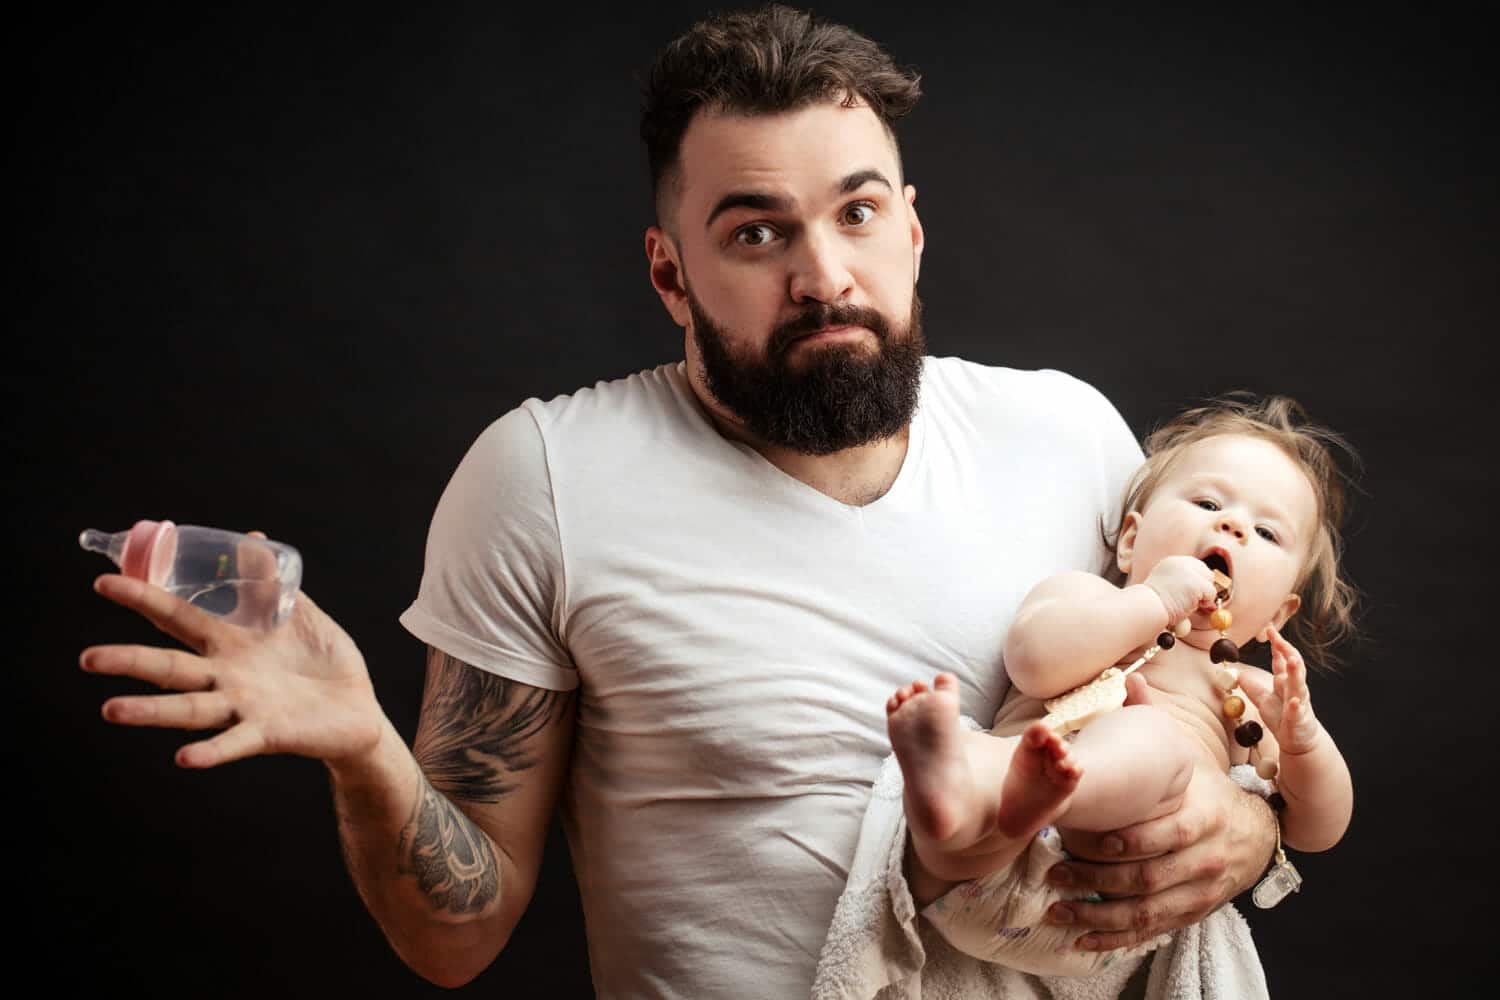 breastfeeding concerns father getting custody